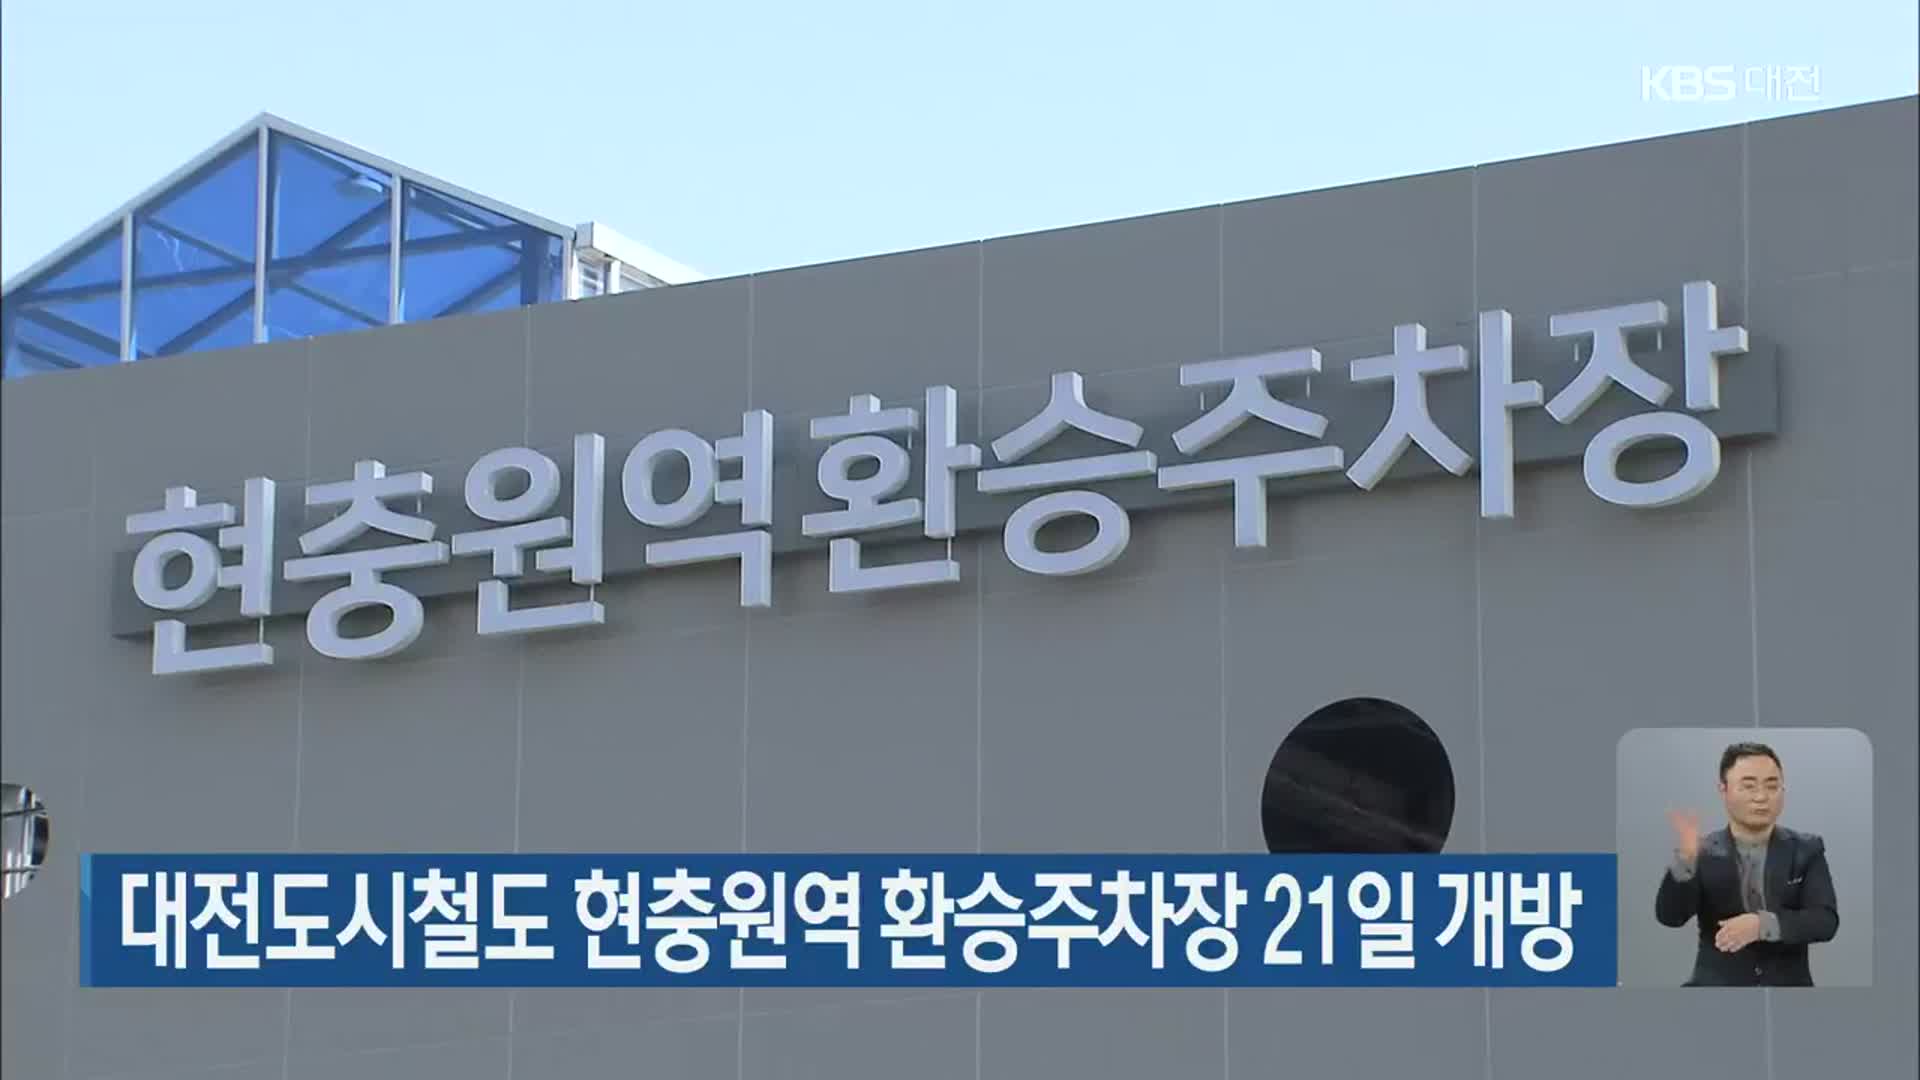 대전도시철도 현충원역 환승주차장 21일 개방